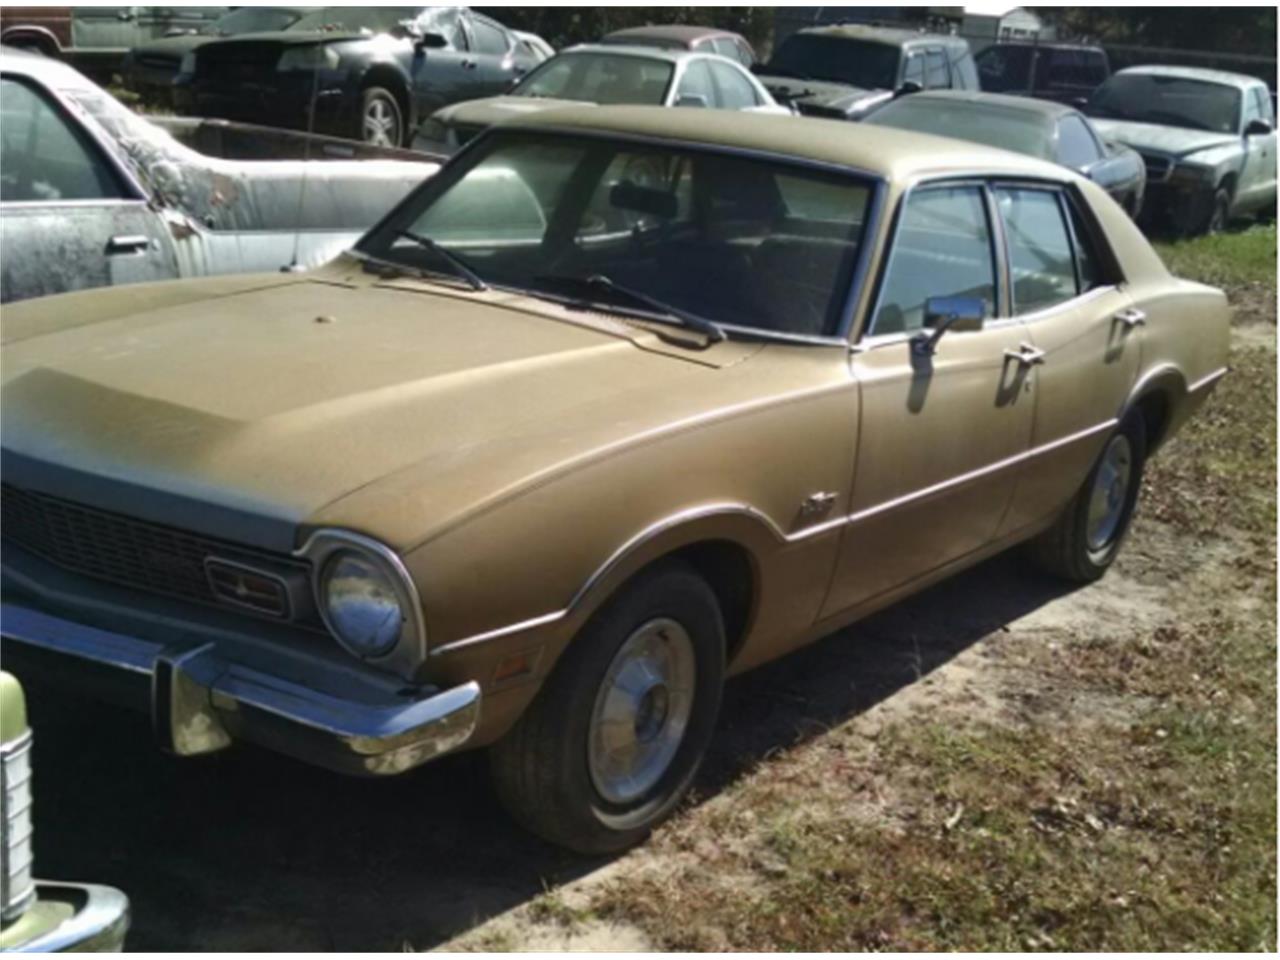 1973 Ford Maverick for Sale | ClassicCars.com | CC-924864